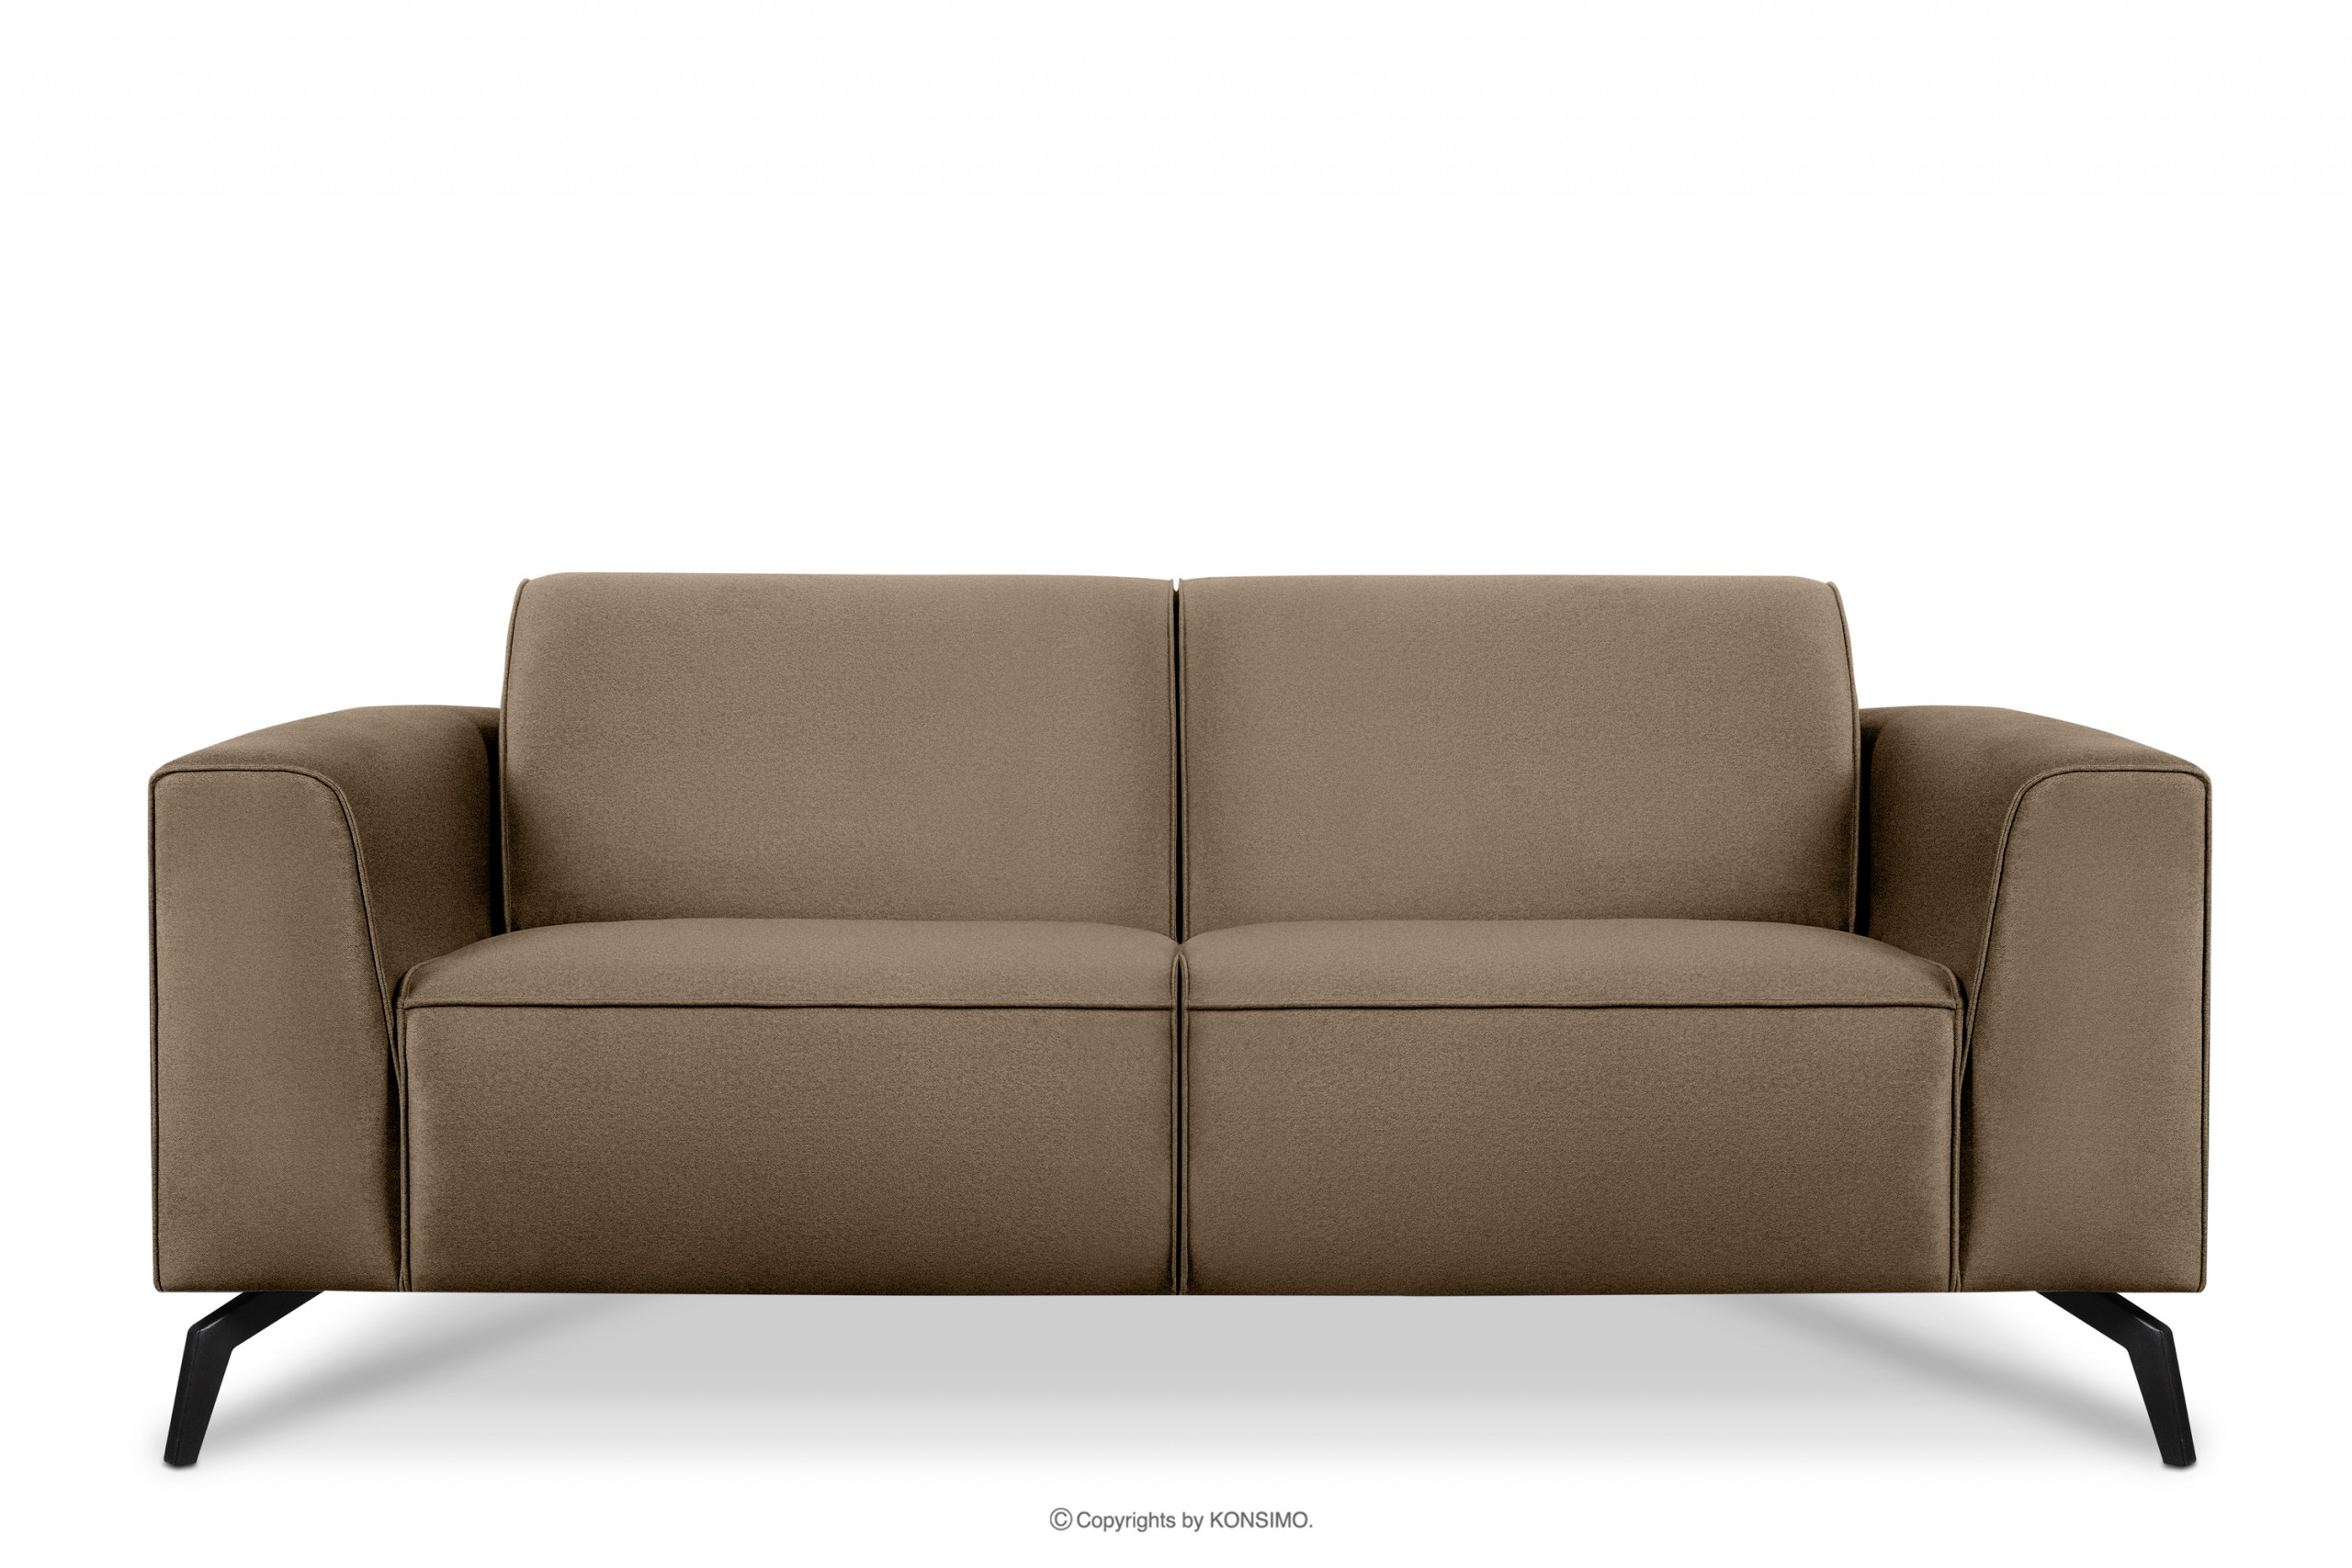 Nowoczesna dwuosobowa sofa beżowa